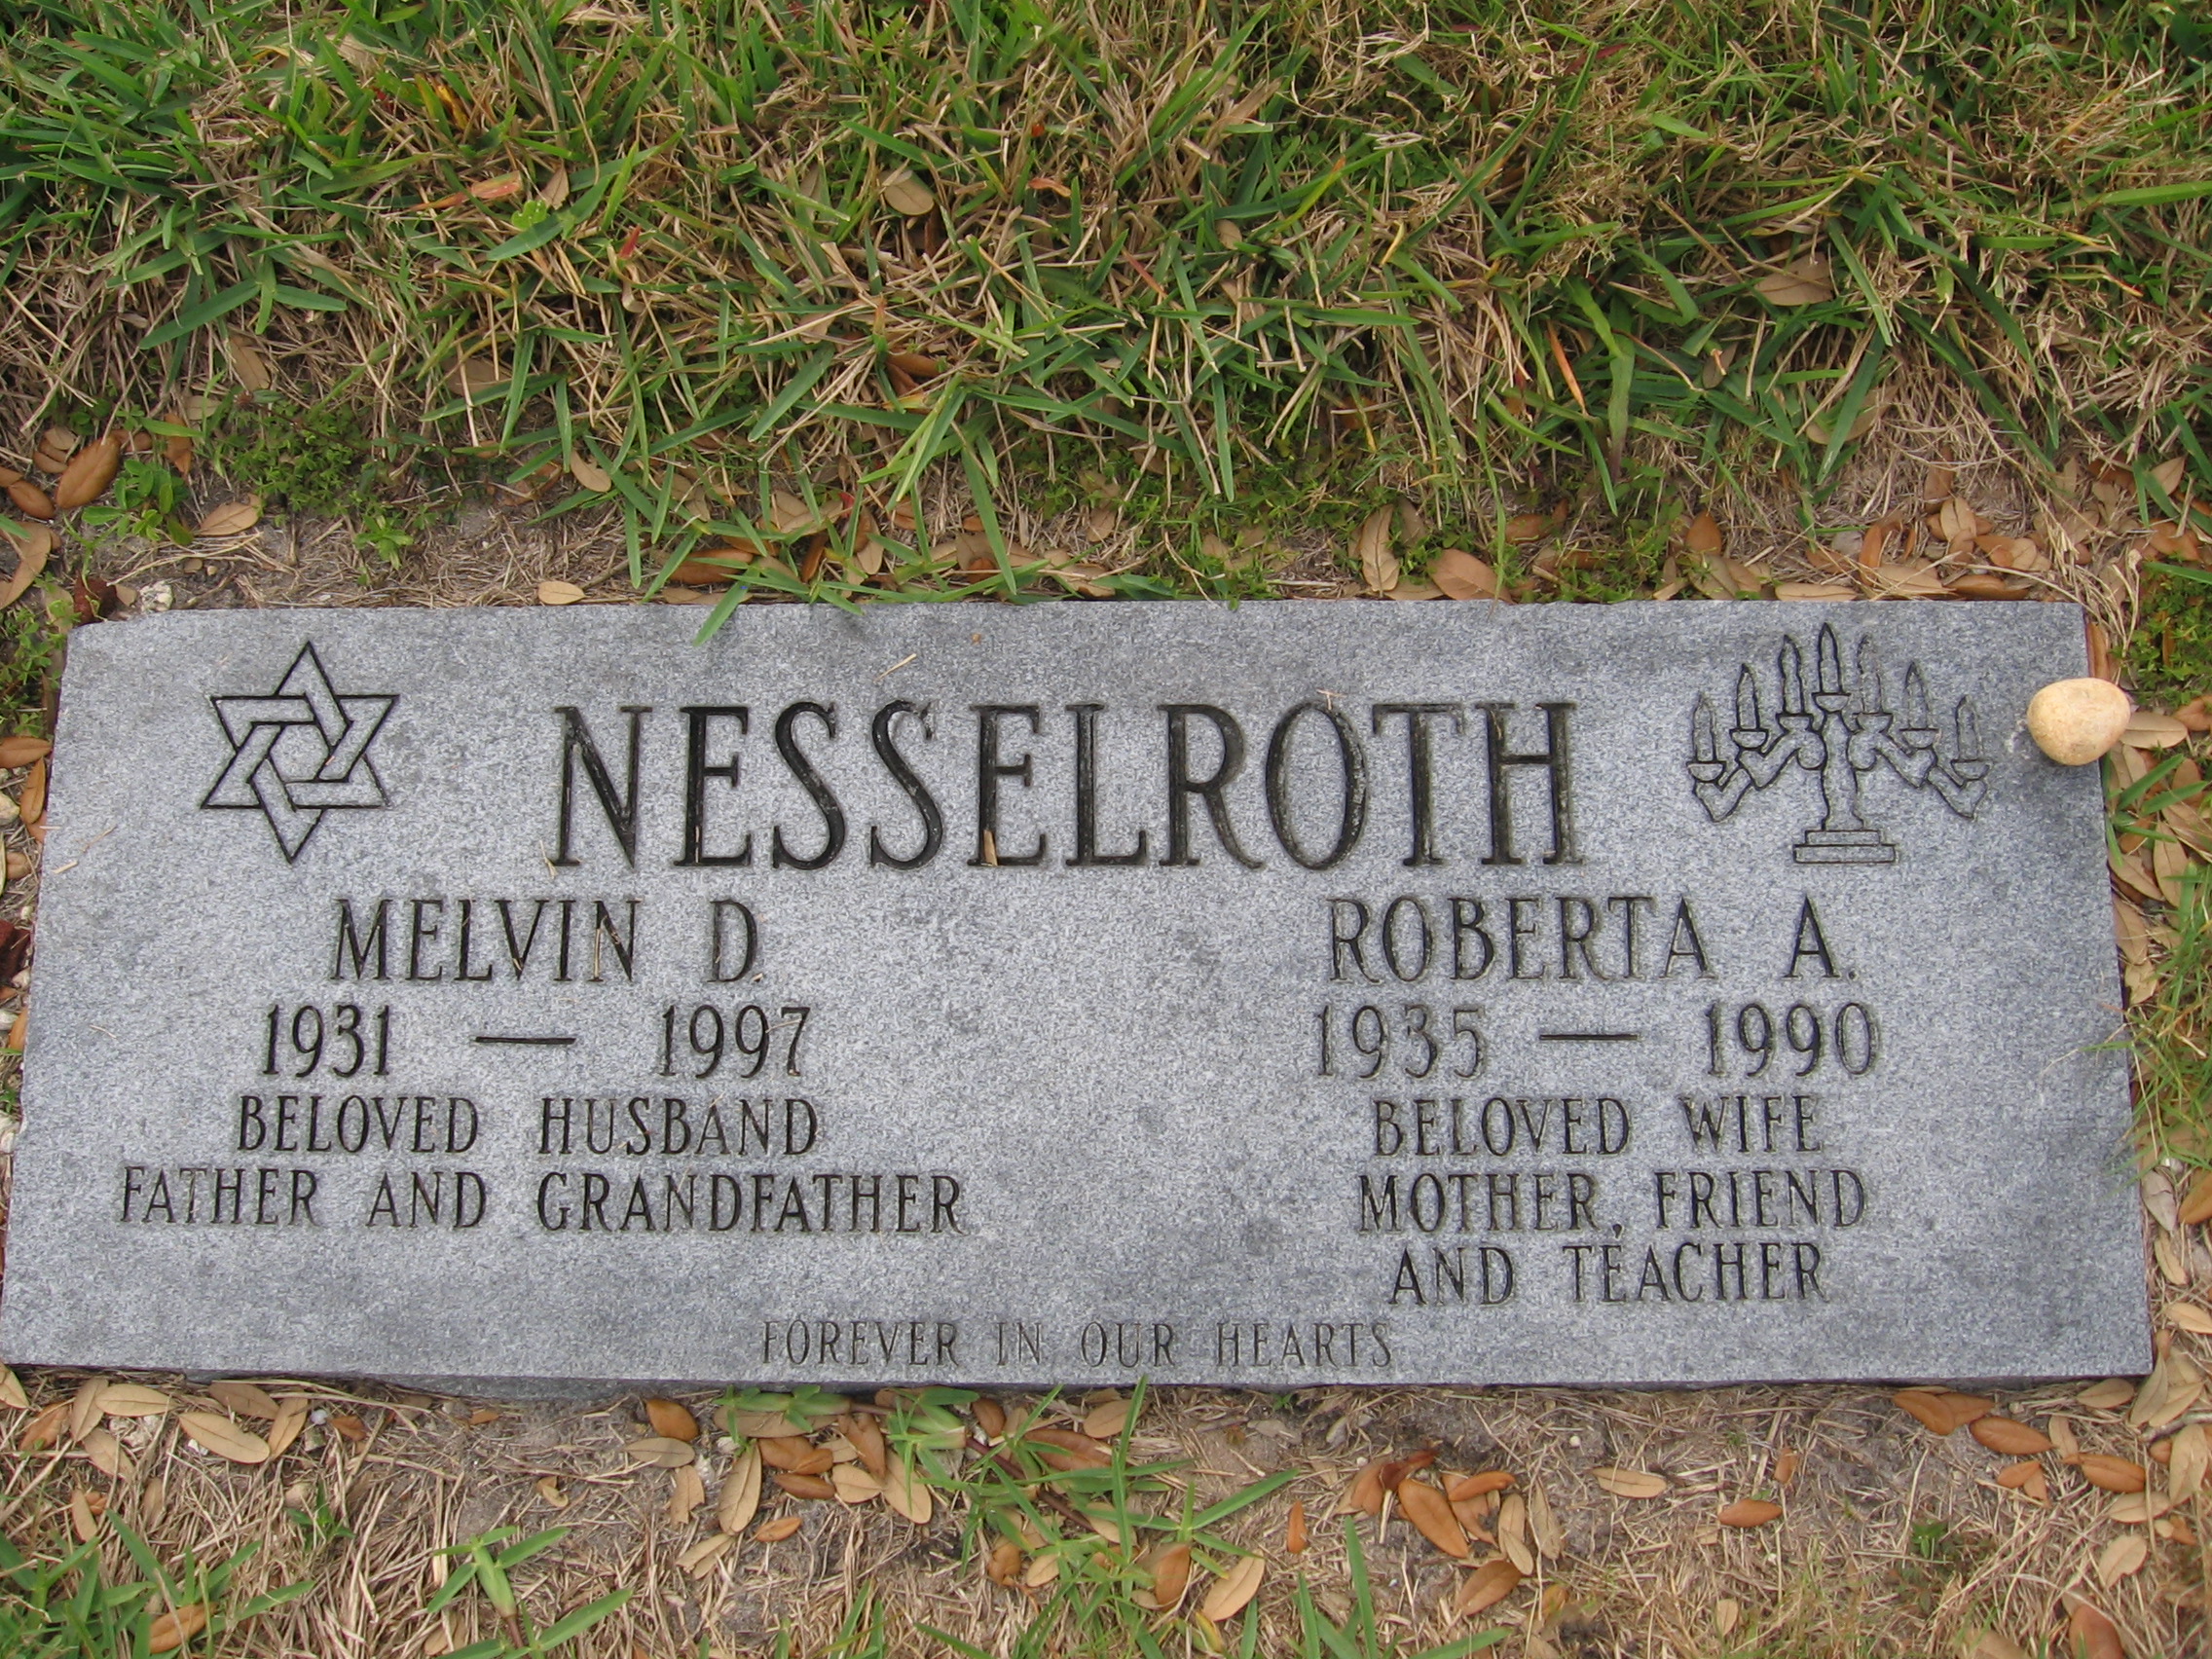 Melvin D Nesselroth